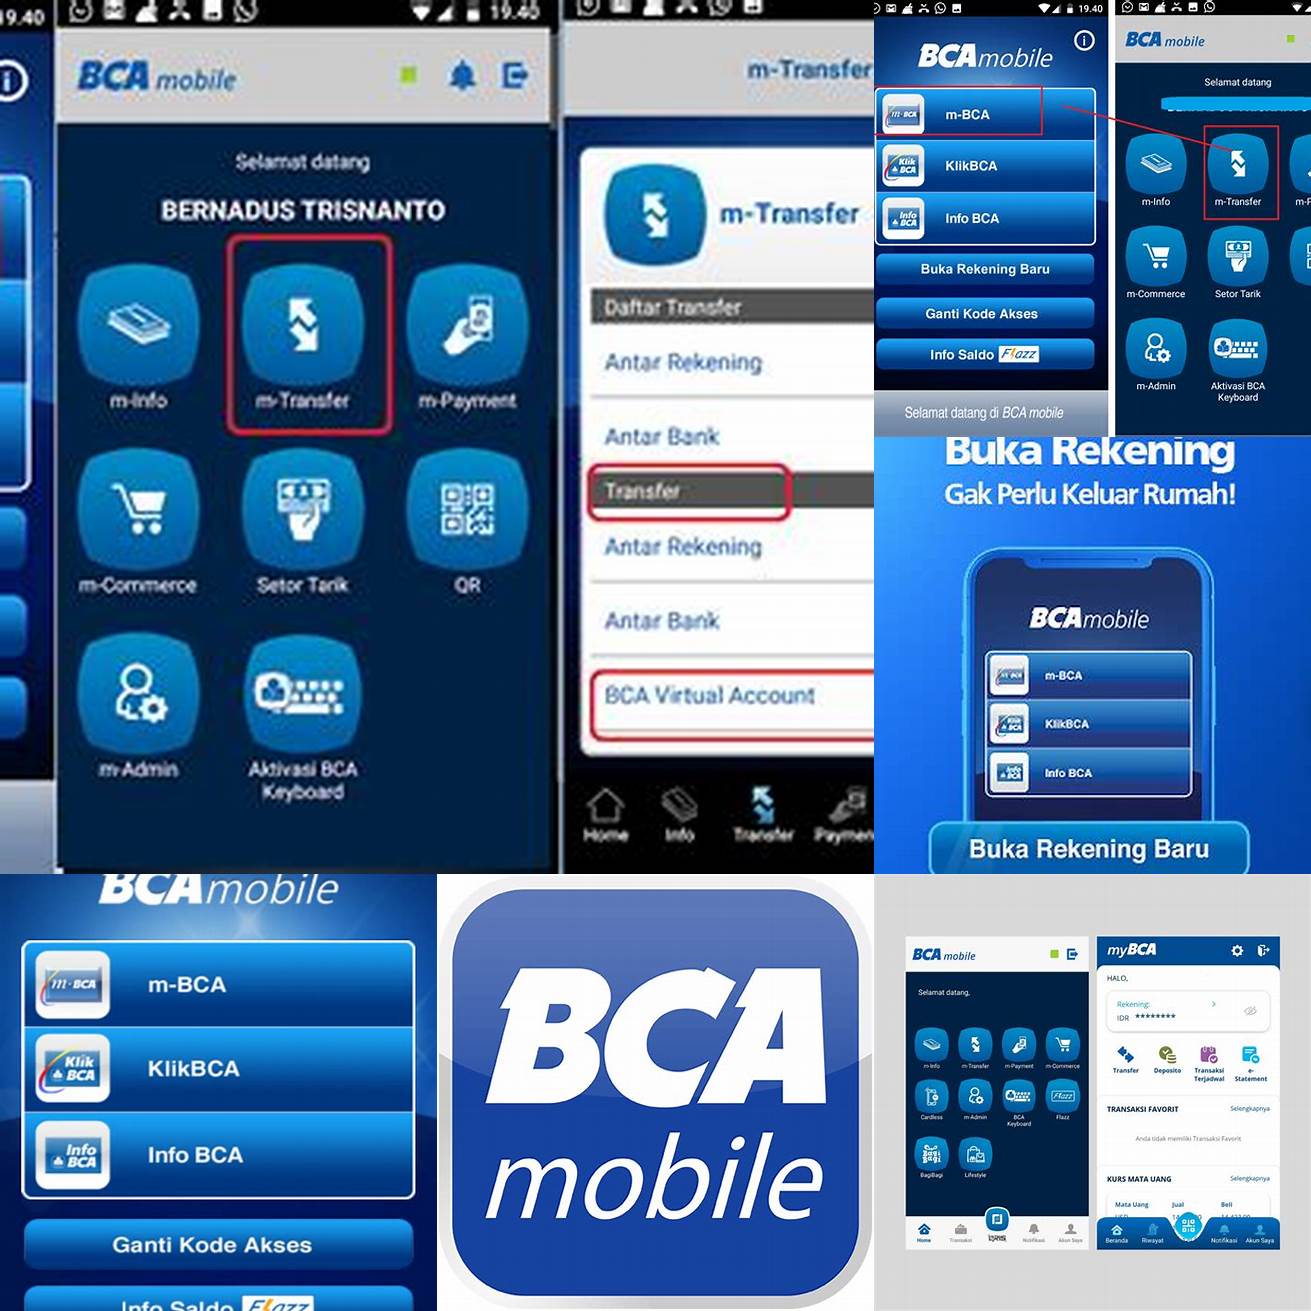 Unduh aplikasi Mobile Banking BCA di Google Play Store atau App Store